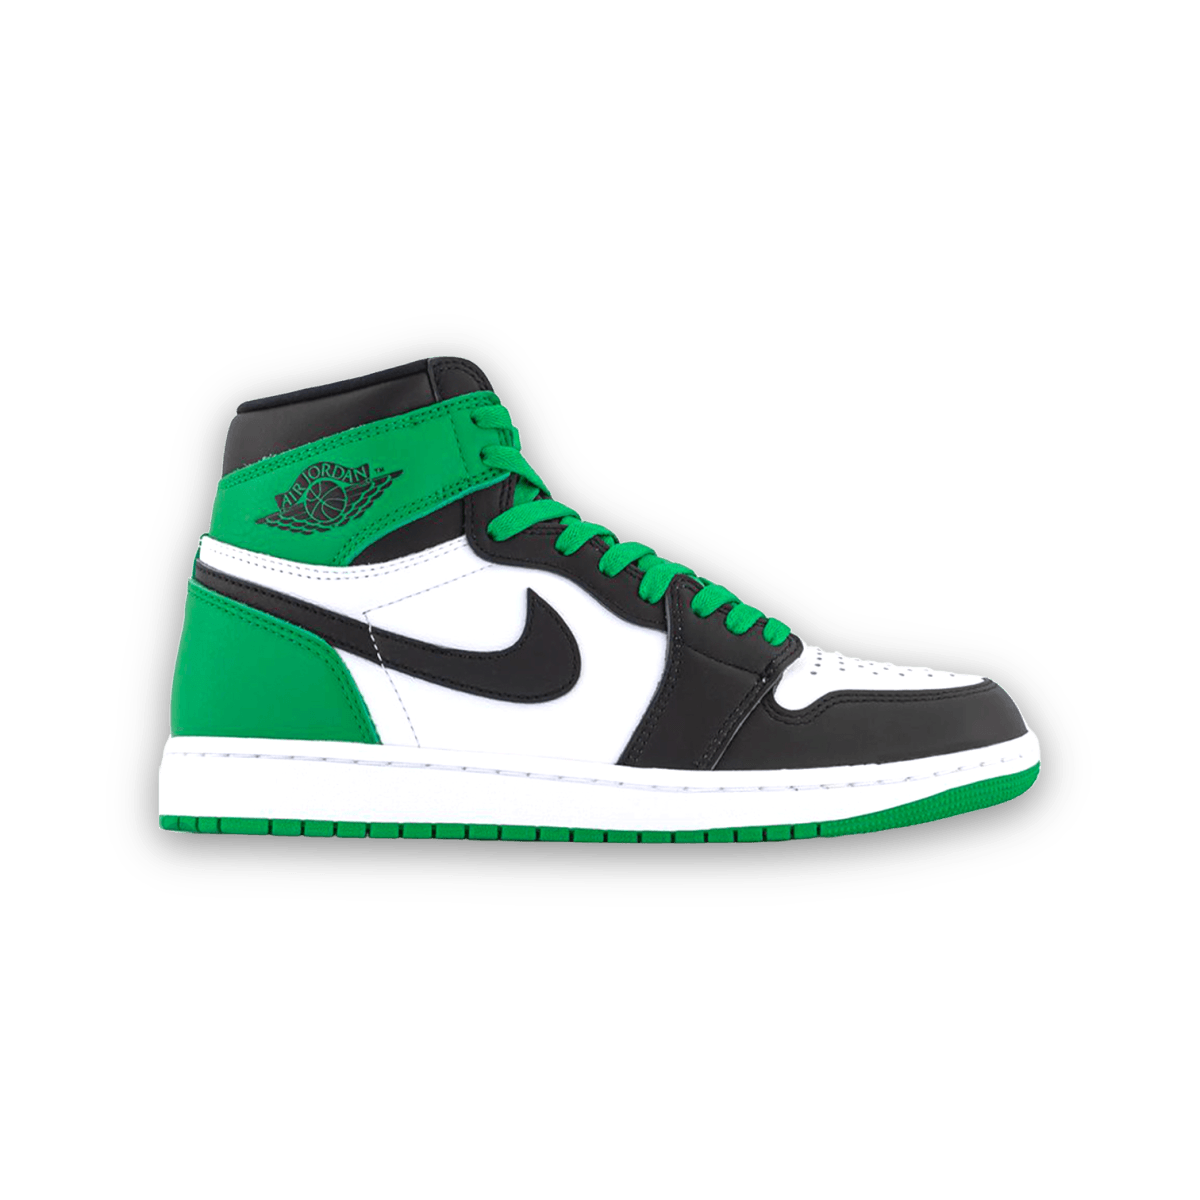 Air Jordan 1 High OG Lucky Green - Grade School - High Sneaker - Jawns on Fire Sneakers & Streetwear